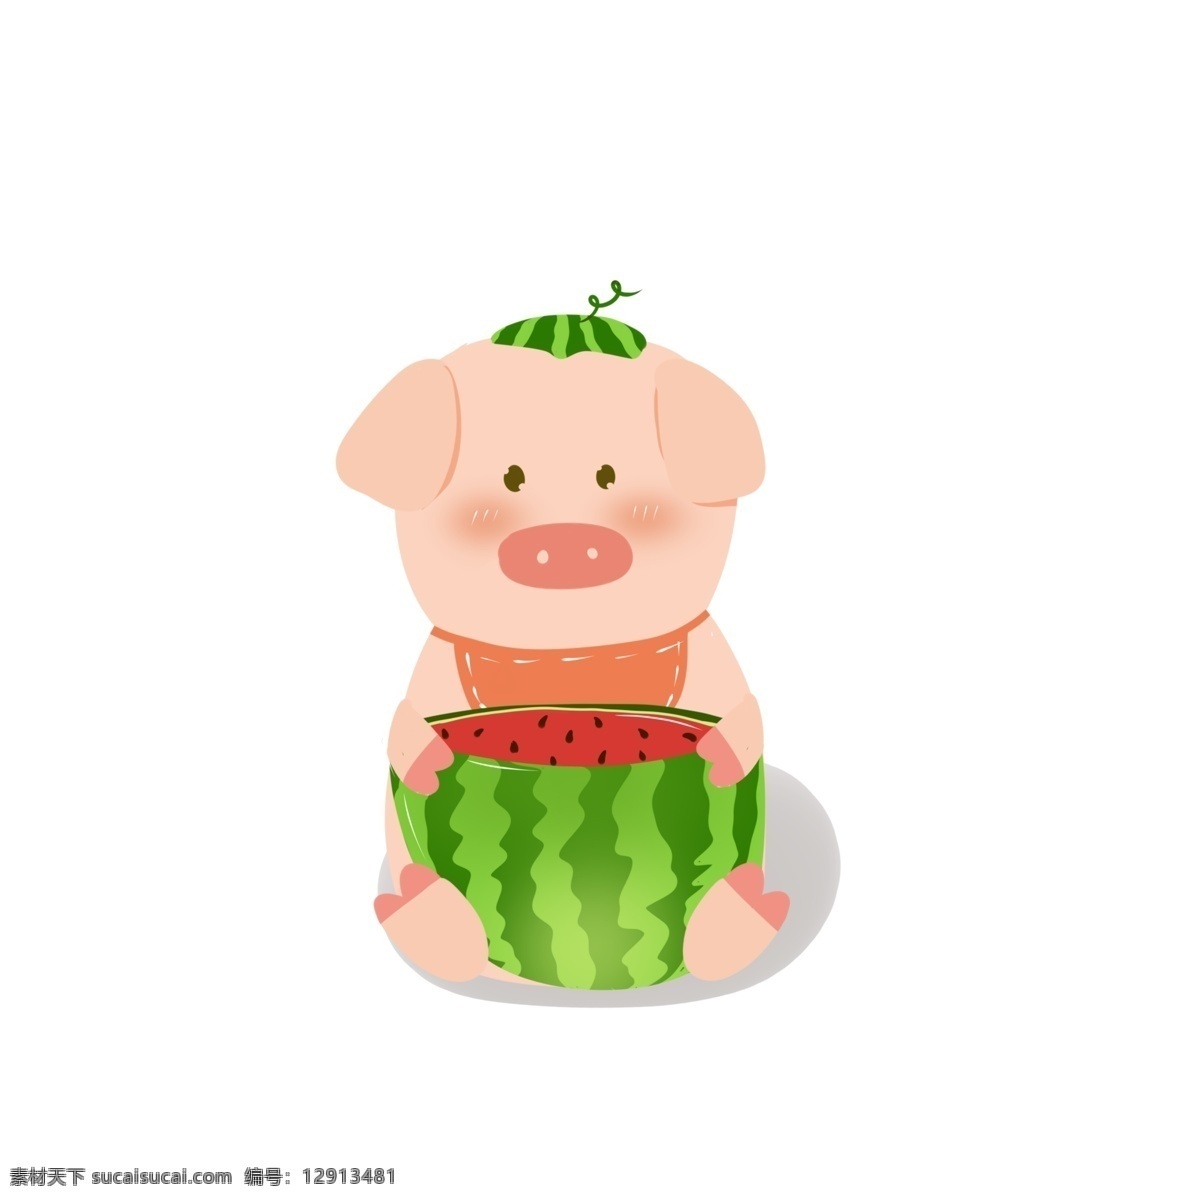 可爱 小 猪 吃 西瓜 小猪 吃西瓜 小猪吃西瓜 可爱小猪